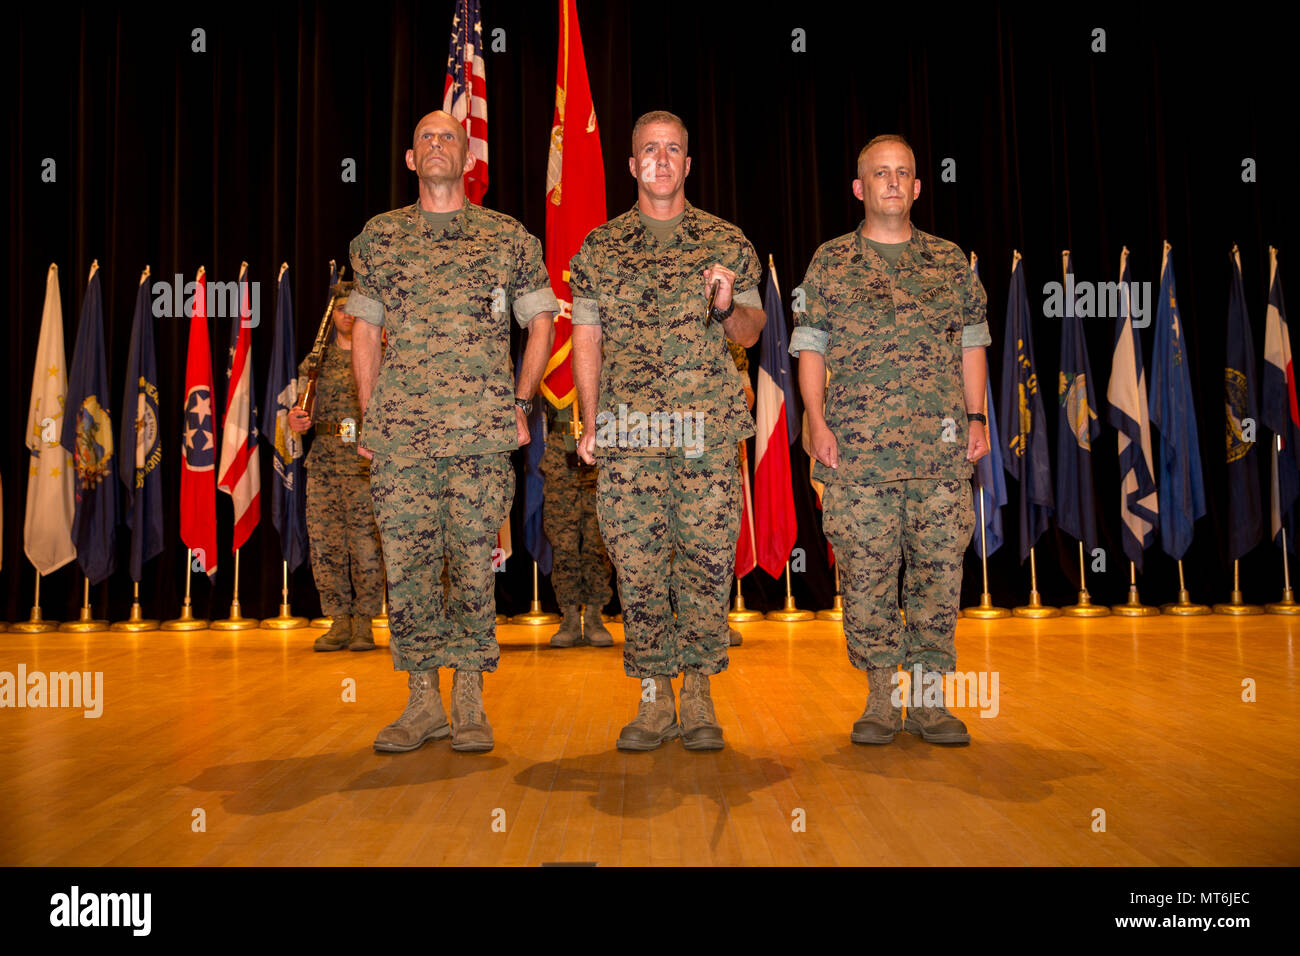 Desde la izquierda, la Infantería de Marina de los EE.UU Gen. Kevin M. Iiams Gral, comandante general del comando, la formación y la educación, el sargento. Gral. William J. Grigsby, entrantes, sargento mayor, y el sargento. Justin D. Gral Lehew, Sargento Mayor saliente, sitúese en la unidad de atención durante la ceremonia de nombramiento y de socorro en Little Hall sobre la base de la infantería de la Marina Quantico, Virginia, 20 de julio de 2017. La ceremonia se celebró a renunciar a funciones del sargento. Justin D. Gral Lehew a Sgt. William J. Grigsby Gral. (Ee.Uu. Marine Corps foto por Lance Cpl. Brian R. Domzalski) Foto de stock